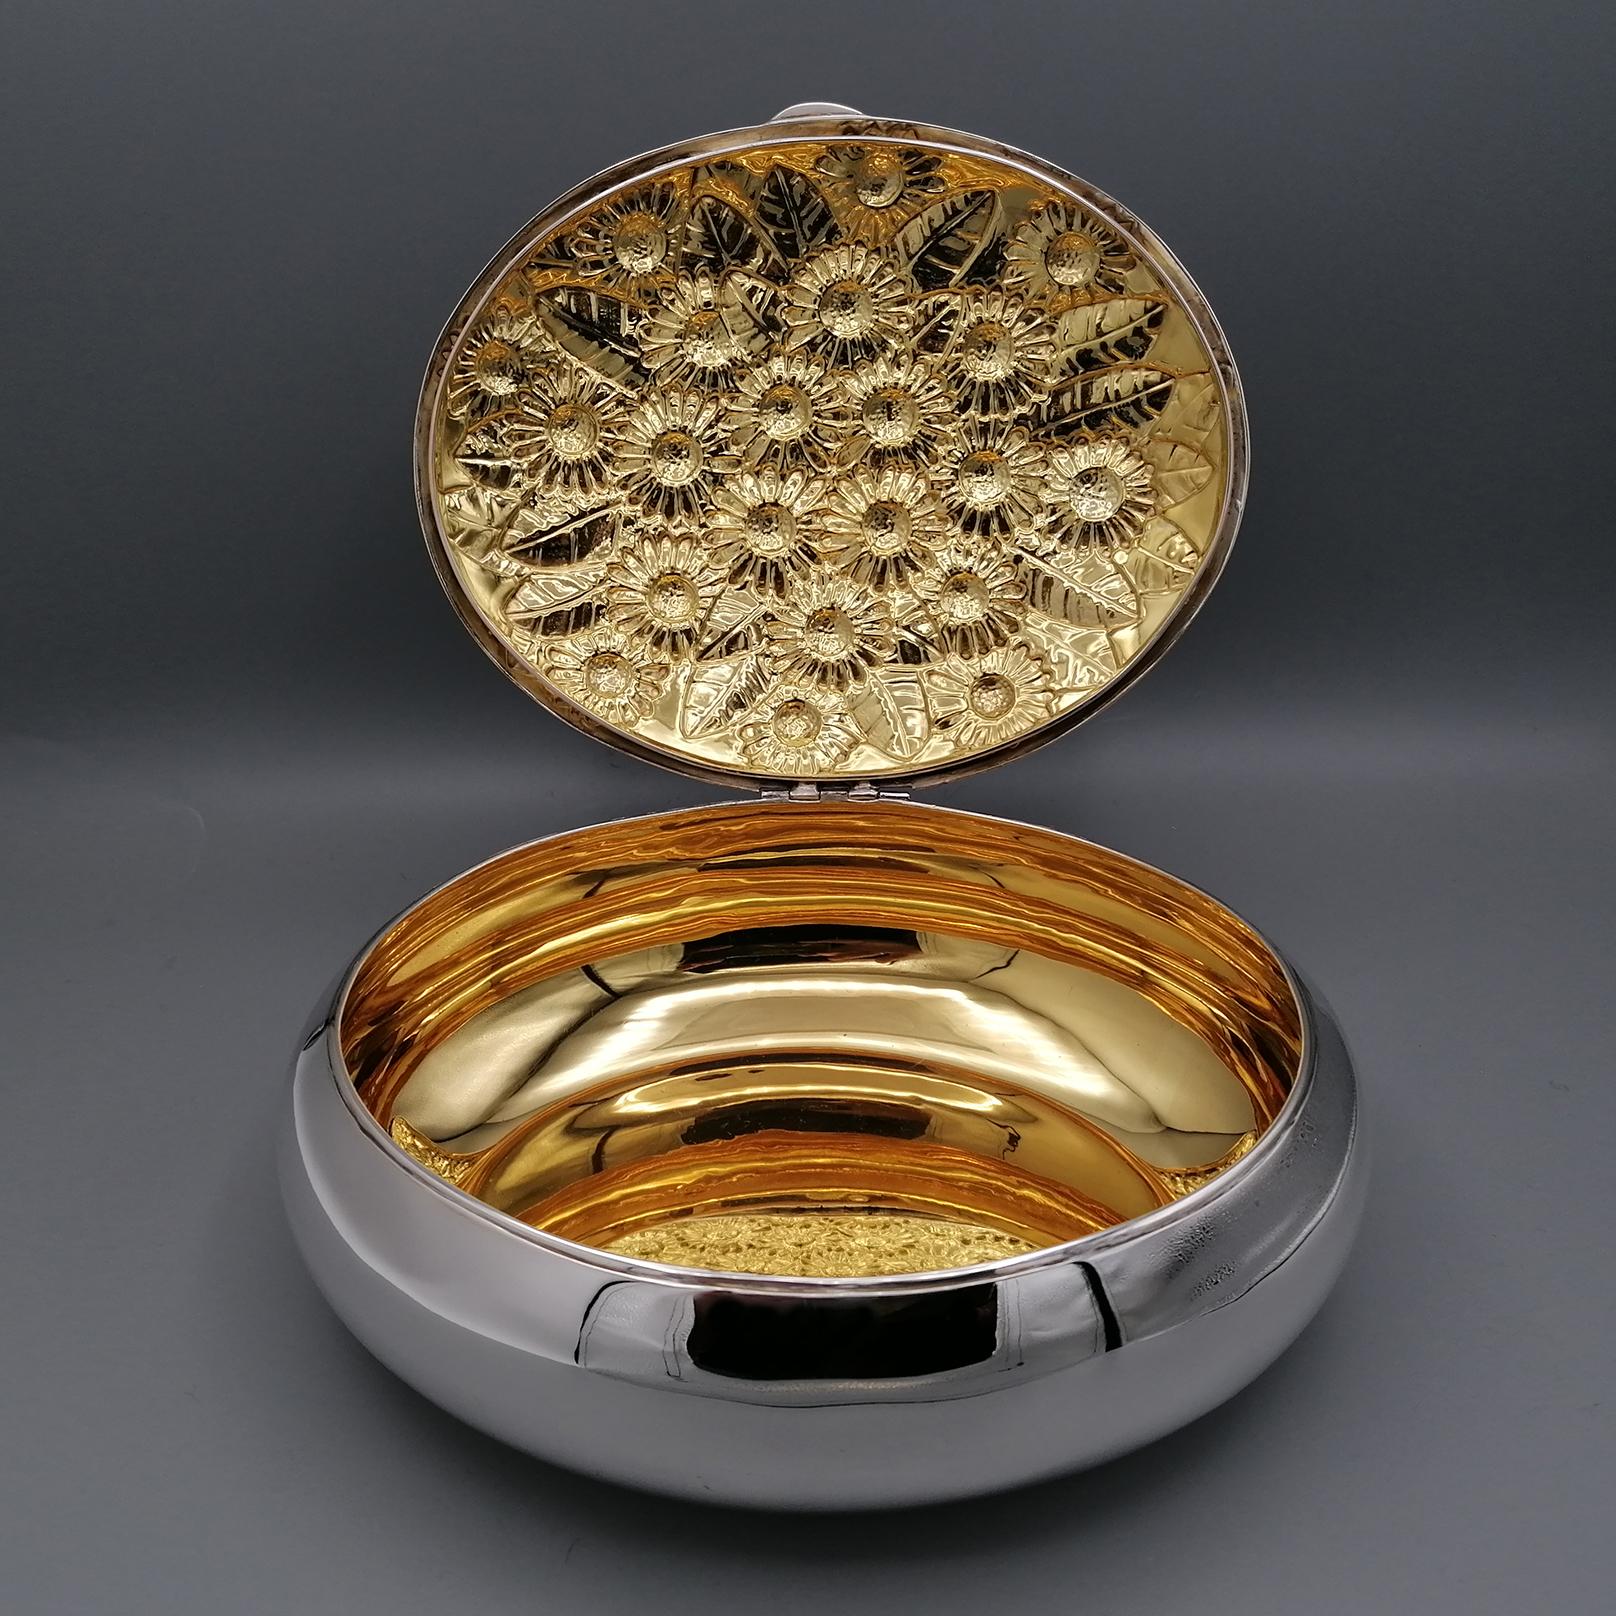 Boîte ovale en argent massif 800 avec marguerites en relief et intérieur en or 24kt.
Cette boîte a été fabriquée entièrement à la main, ce qui lui donne une forme ovale.
Le couvercle, finement estampé de motifs floraux et notamment de marguerites,